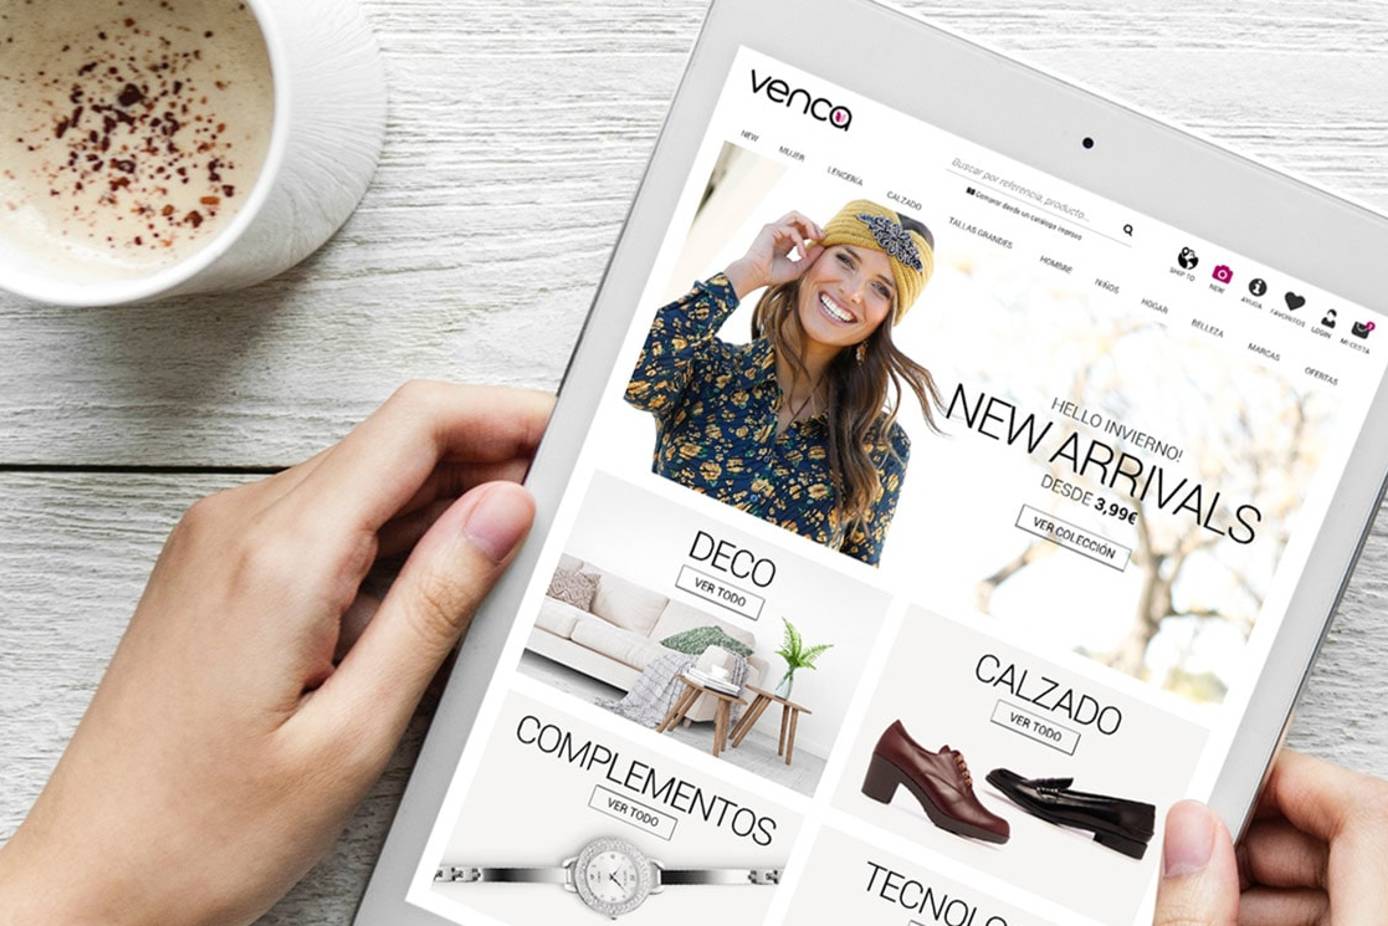 Venca revoluciona los “marketplace” en España: lanza una plataforma con más de marcas y 300.000 referencias